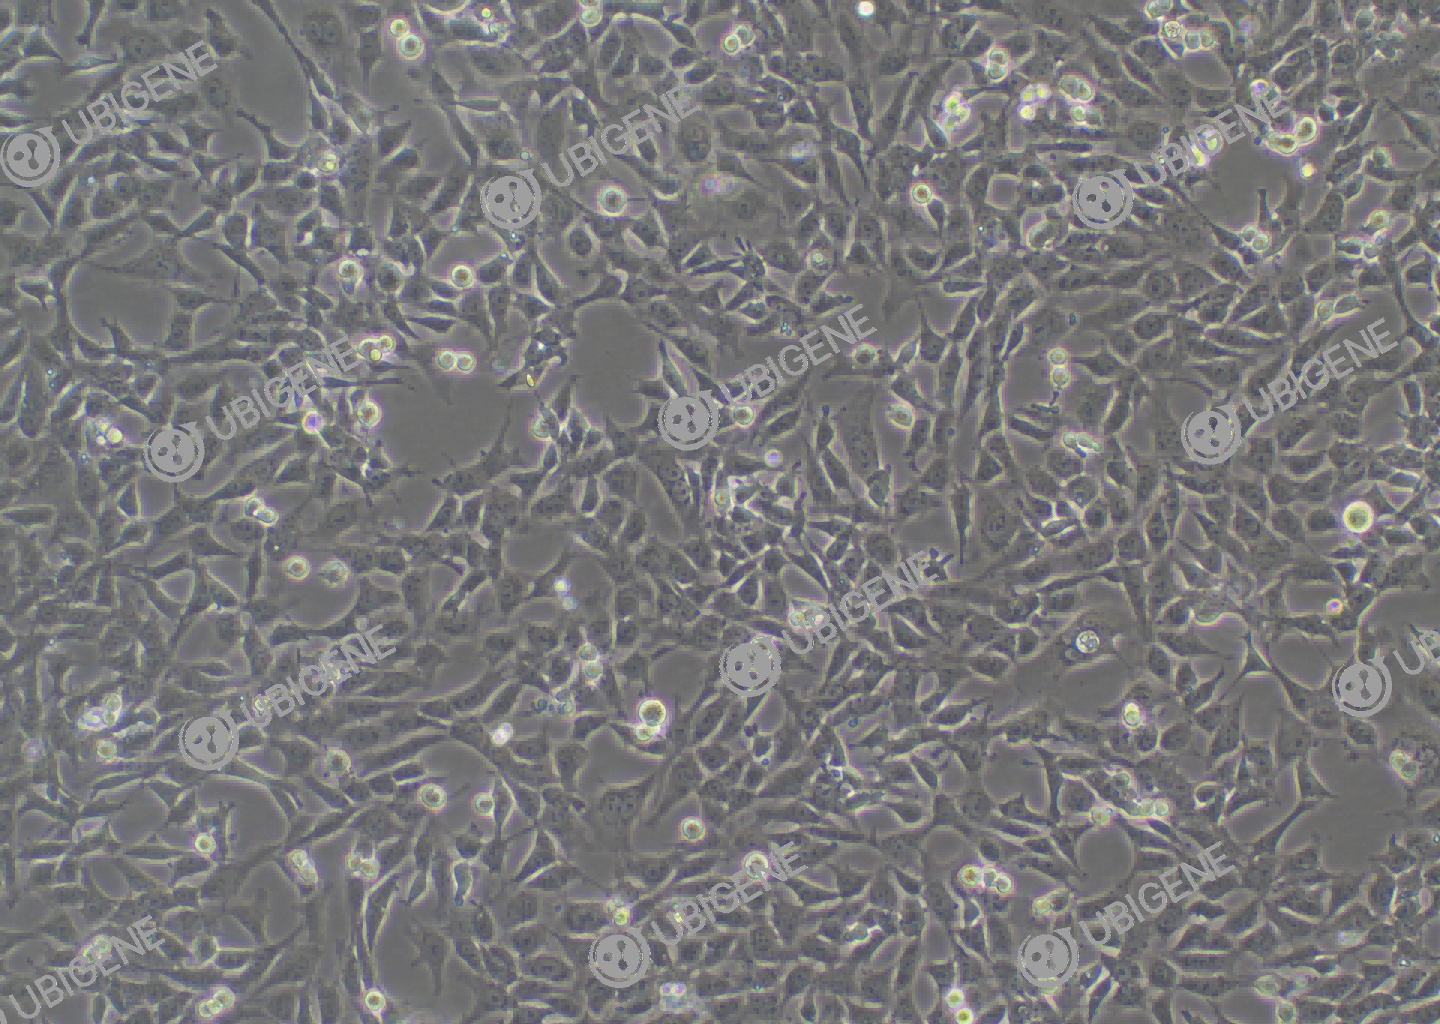 小鼠肾足细胞(MPC-5)细胞形态培养图